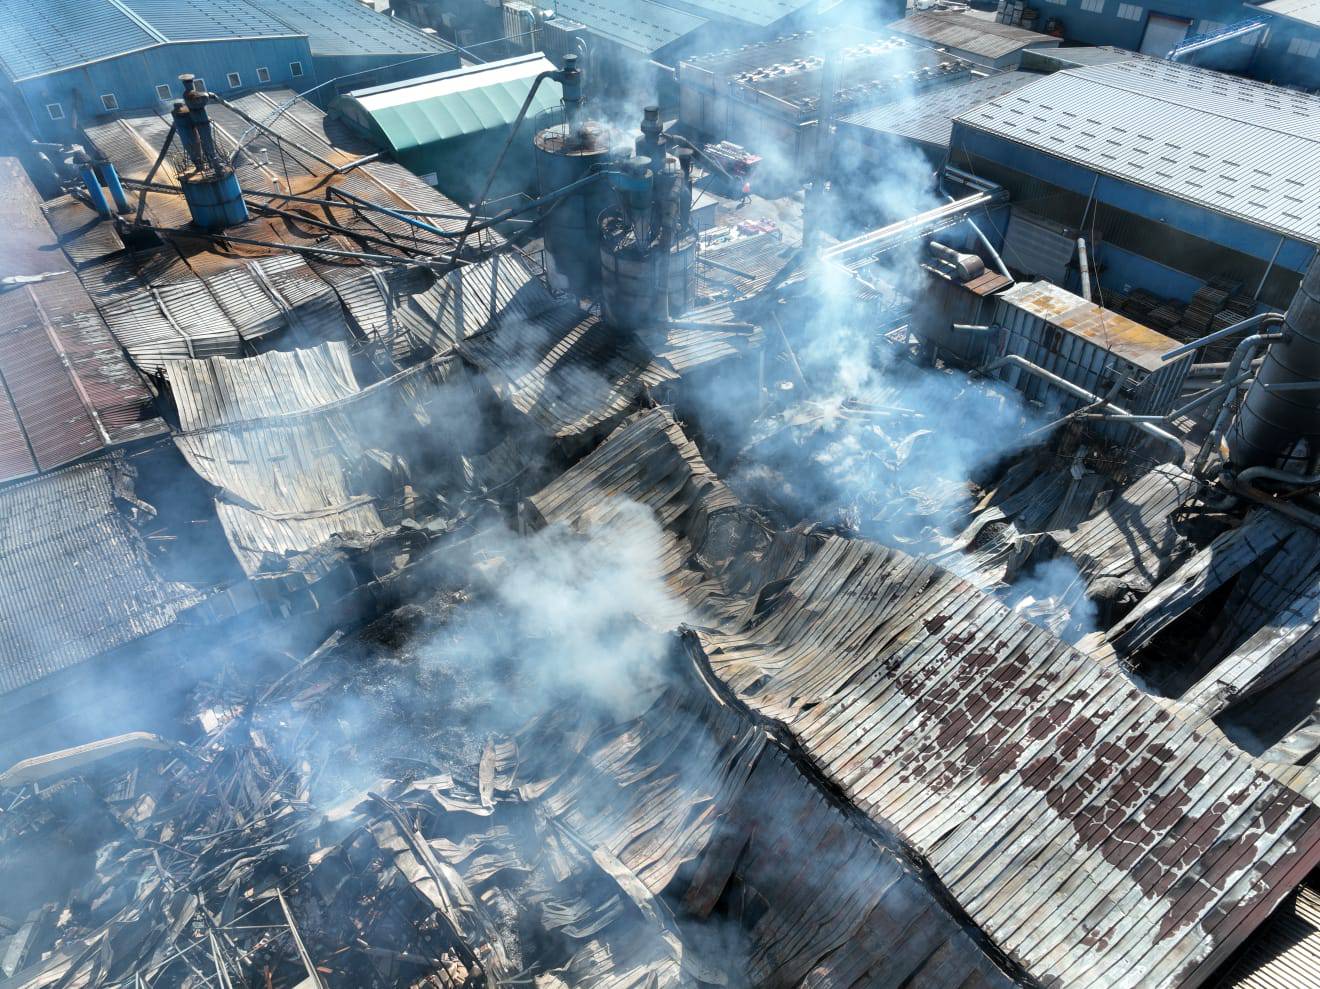 Vlasnik tvornice u kojoj je izbio požar: 'Nismo spavali cijelu noć, kolega nam je nastradao, užas'